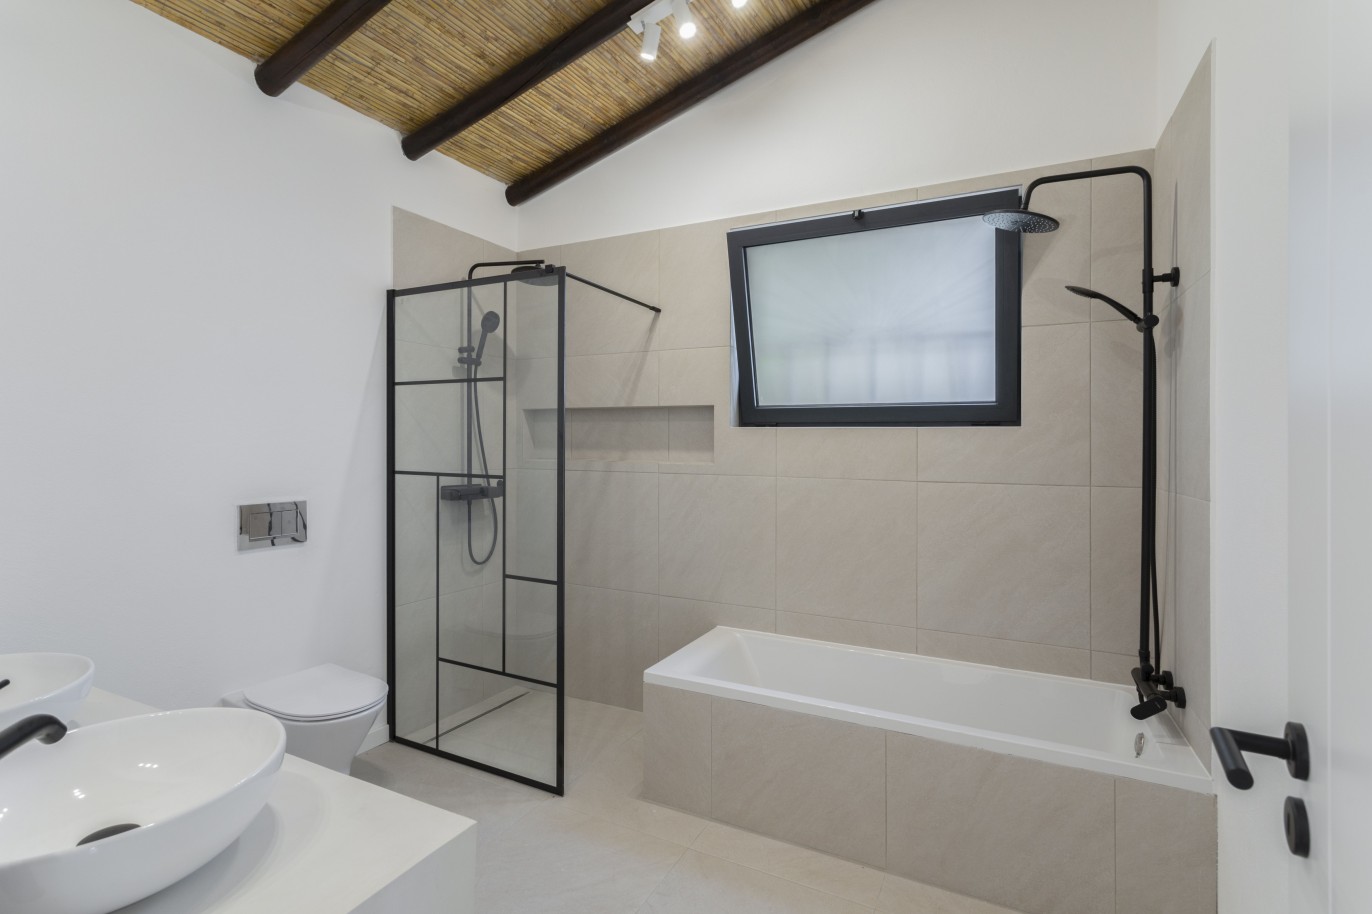 3 bedroom villa with sea view and pool, for sale in Santa Barbara, Algarve_245056